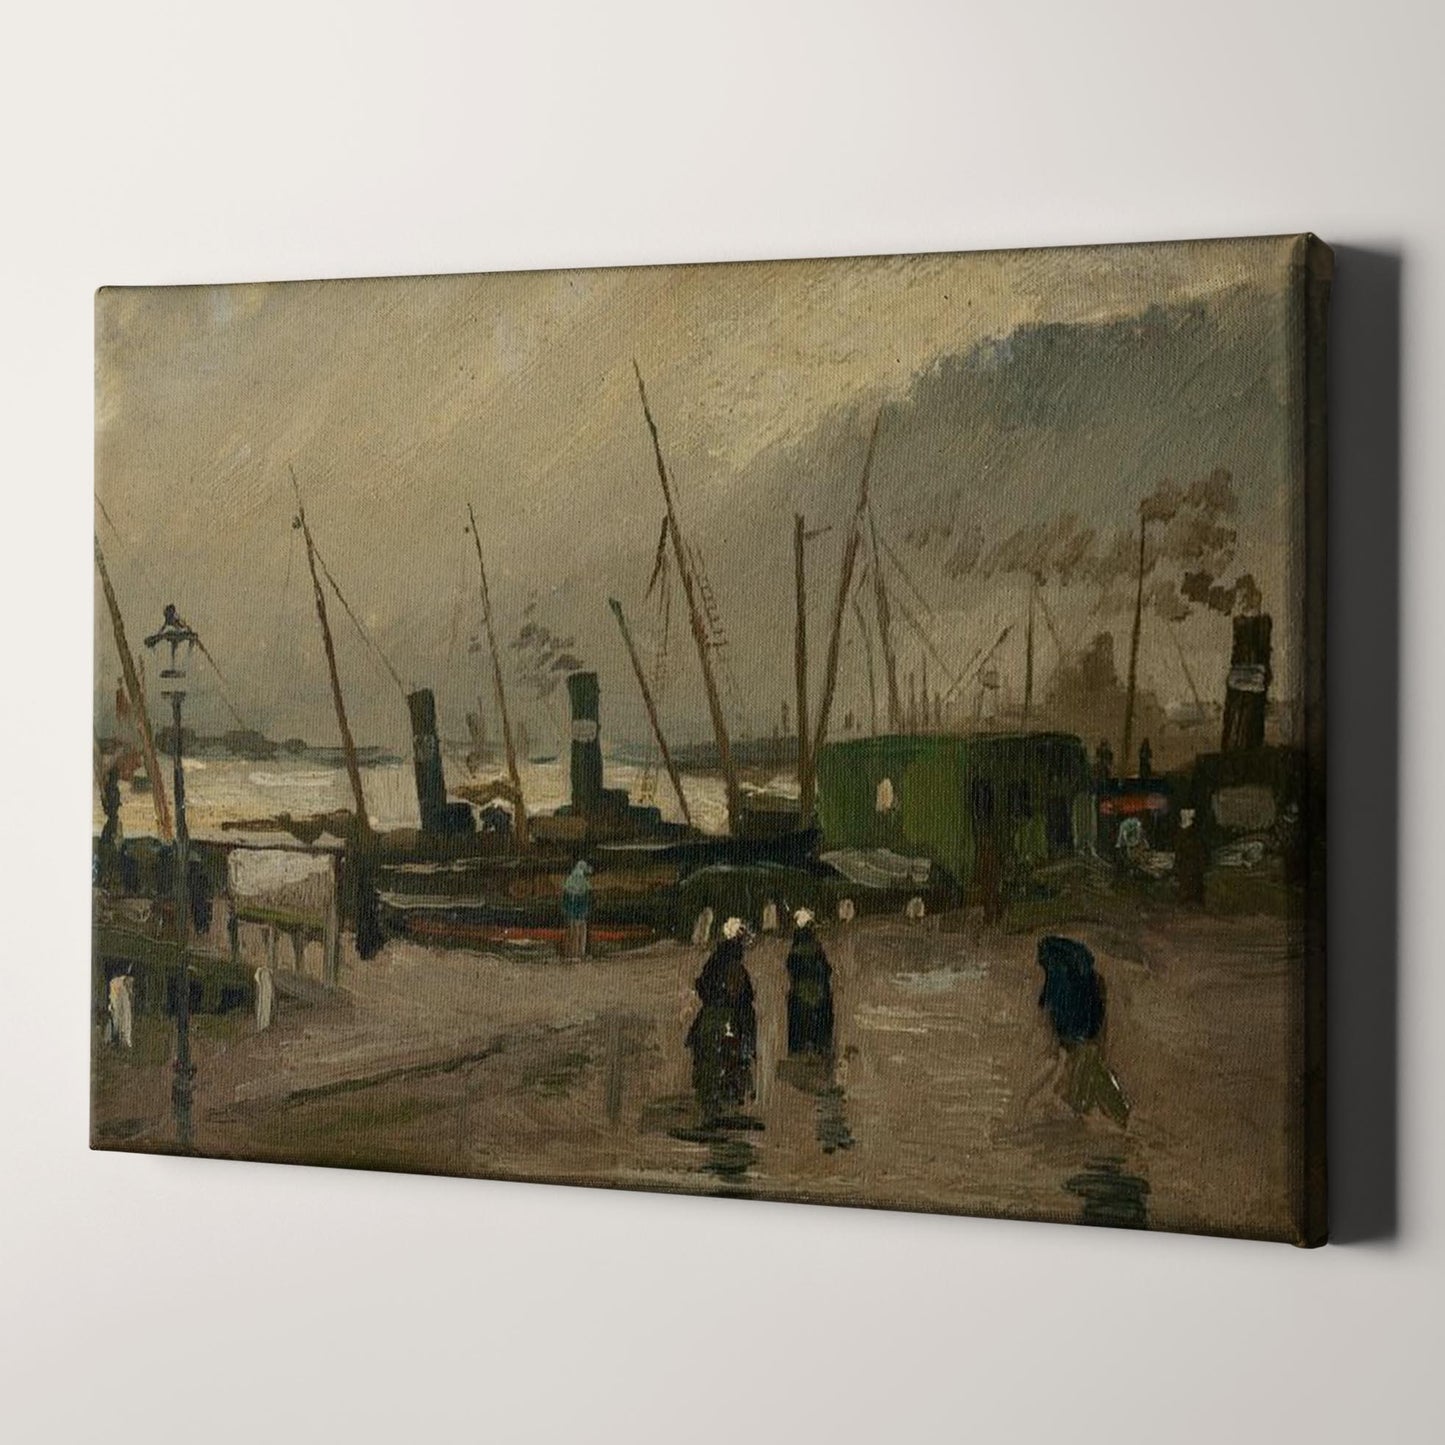 The De Ruijterkade in Amsterdam (1885) by Van Gogh